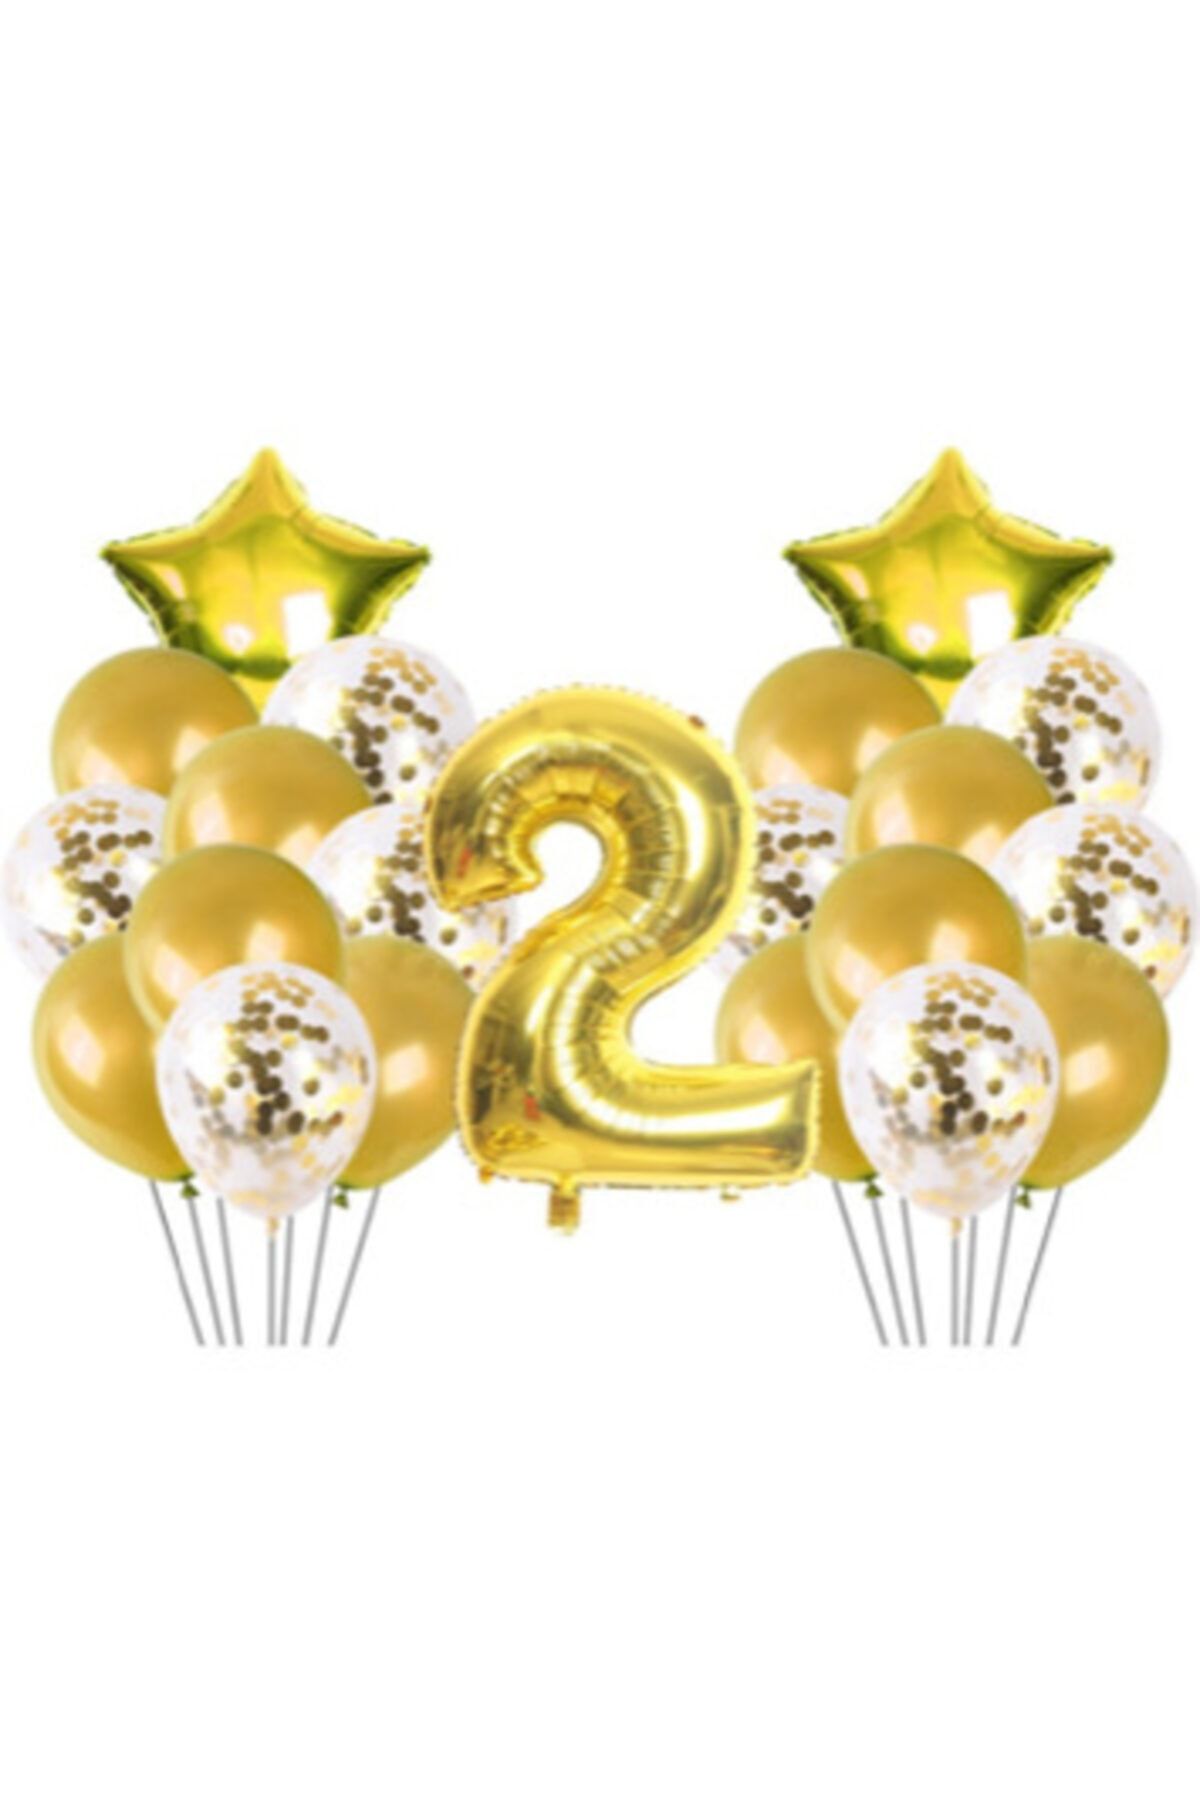 Deniz Party Store 2 Yaş Konfetili Balon Doğum Günü Seti Gold